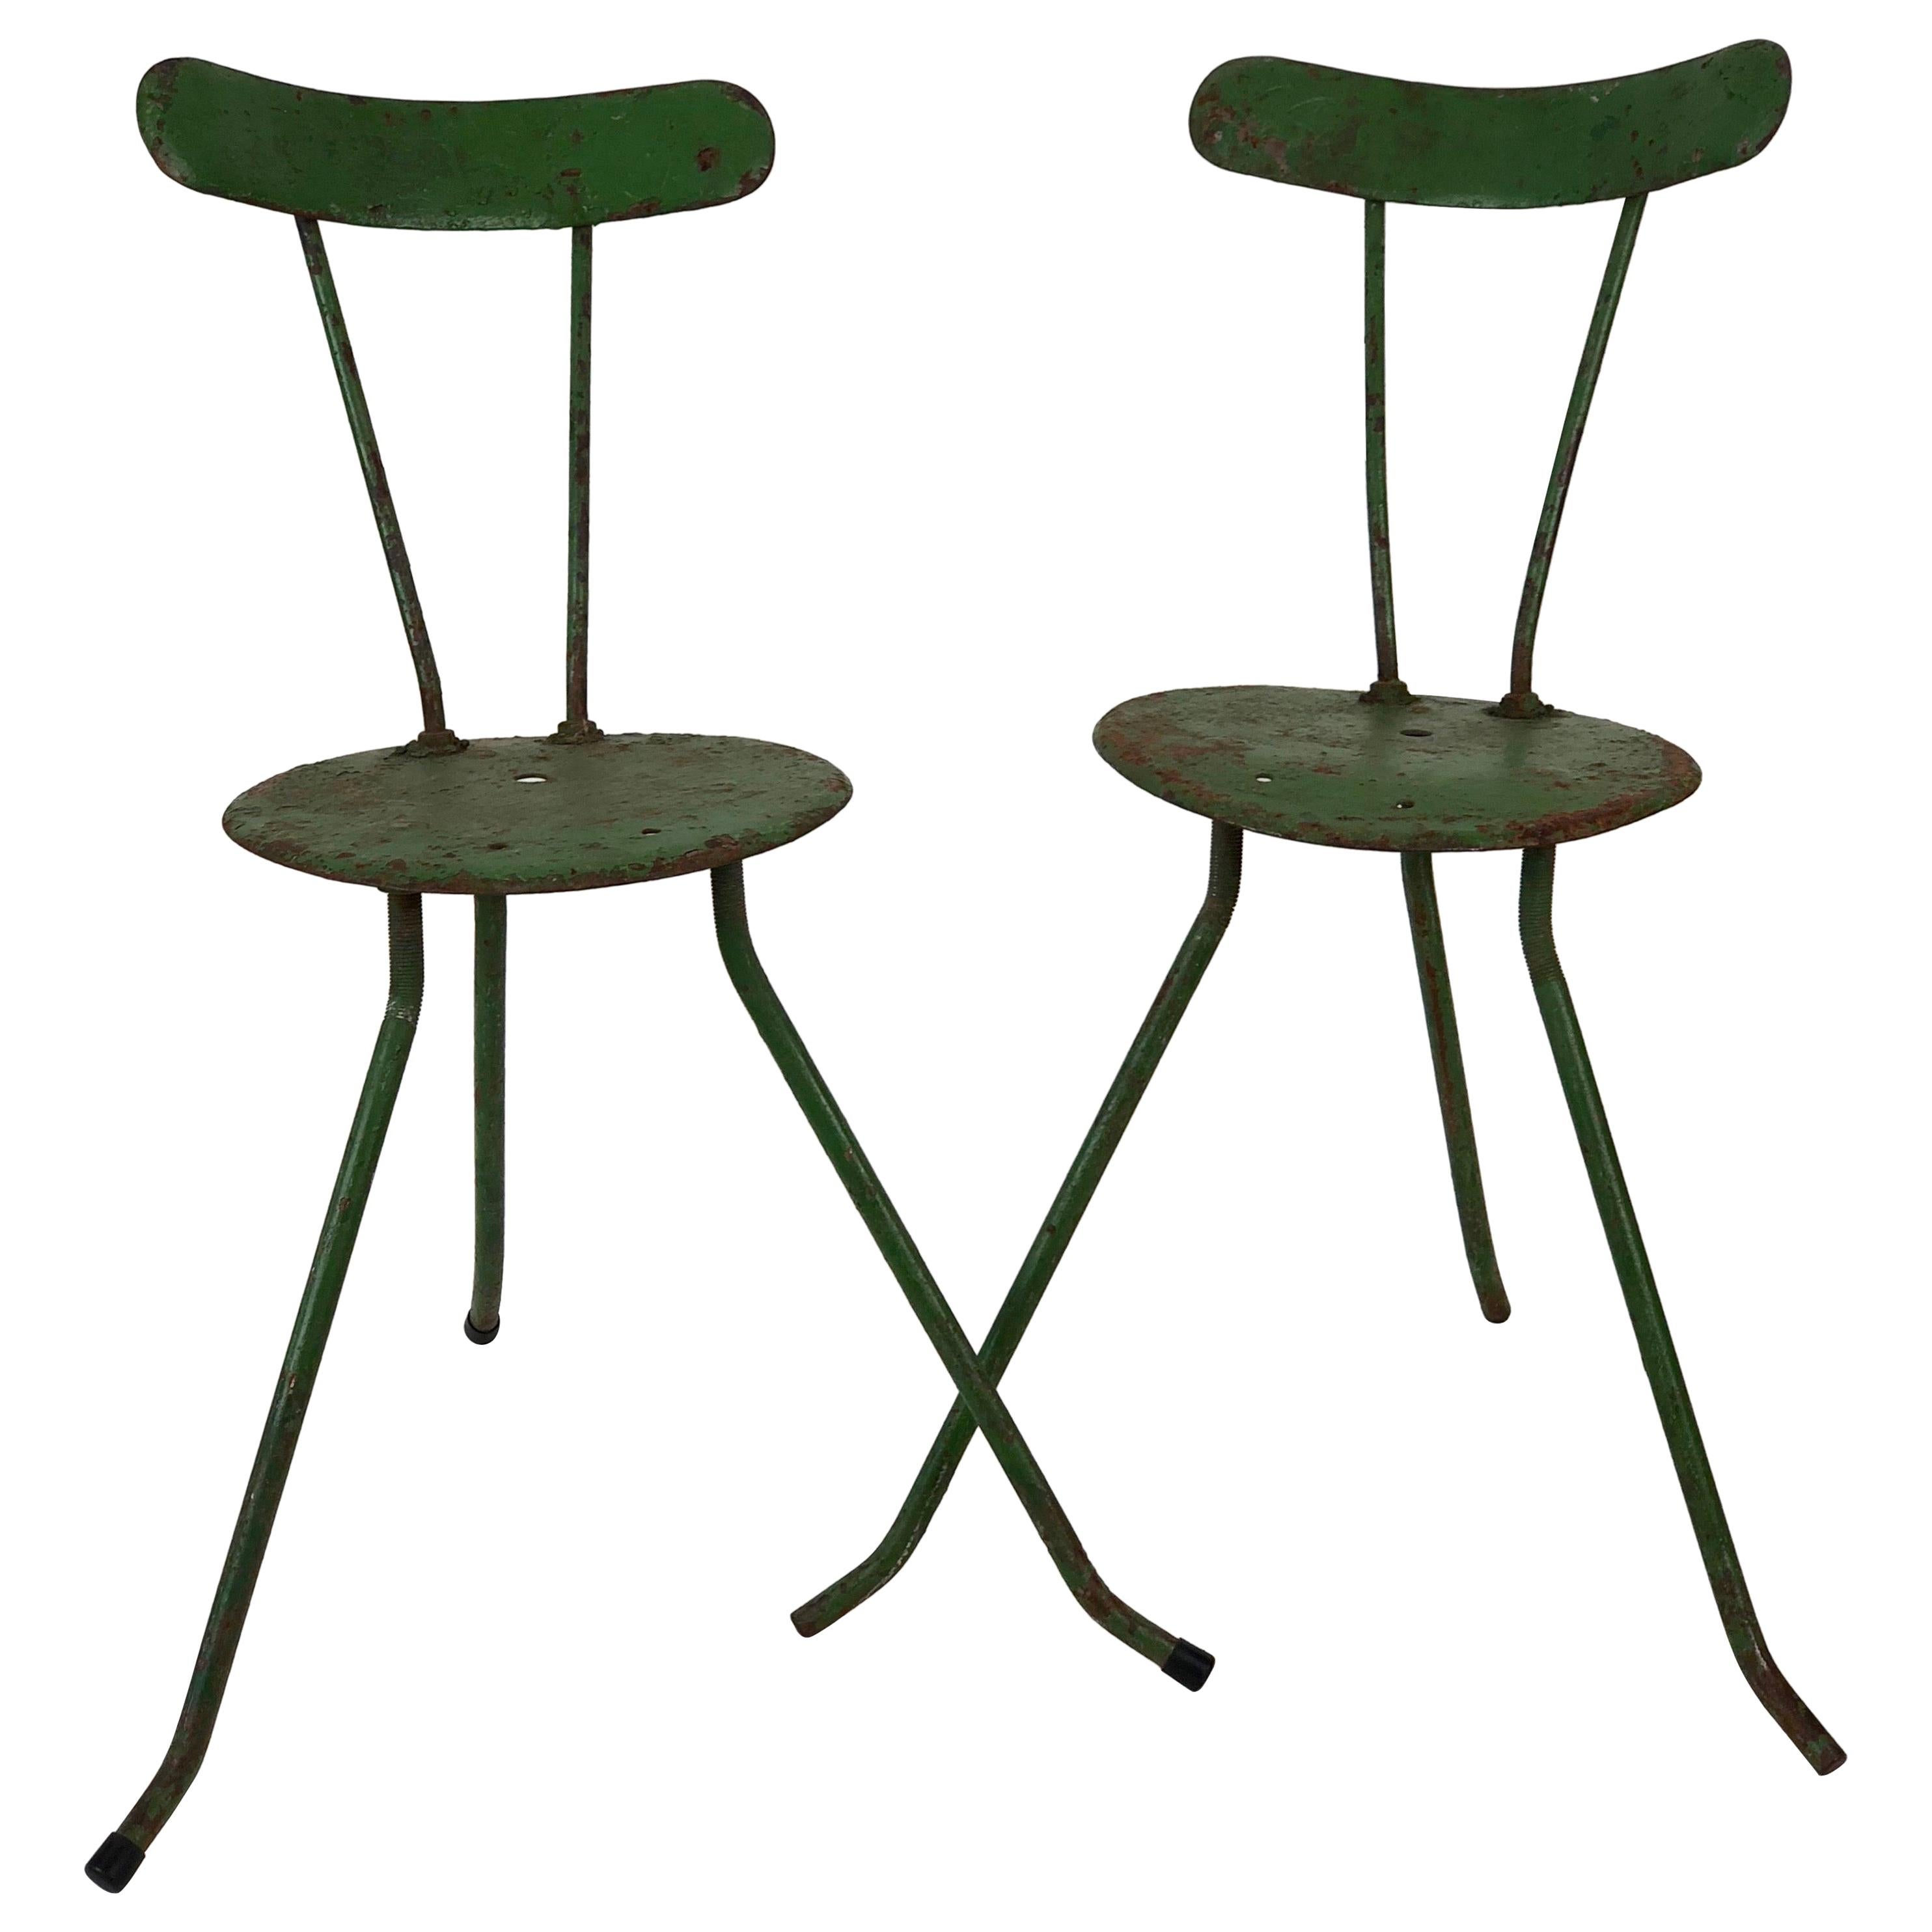 Pair of Handmade Metal Chairs, 1950s, from the Balaton Lake Region, Hungary